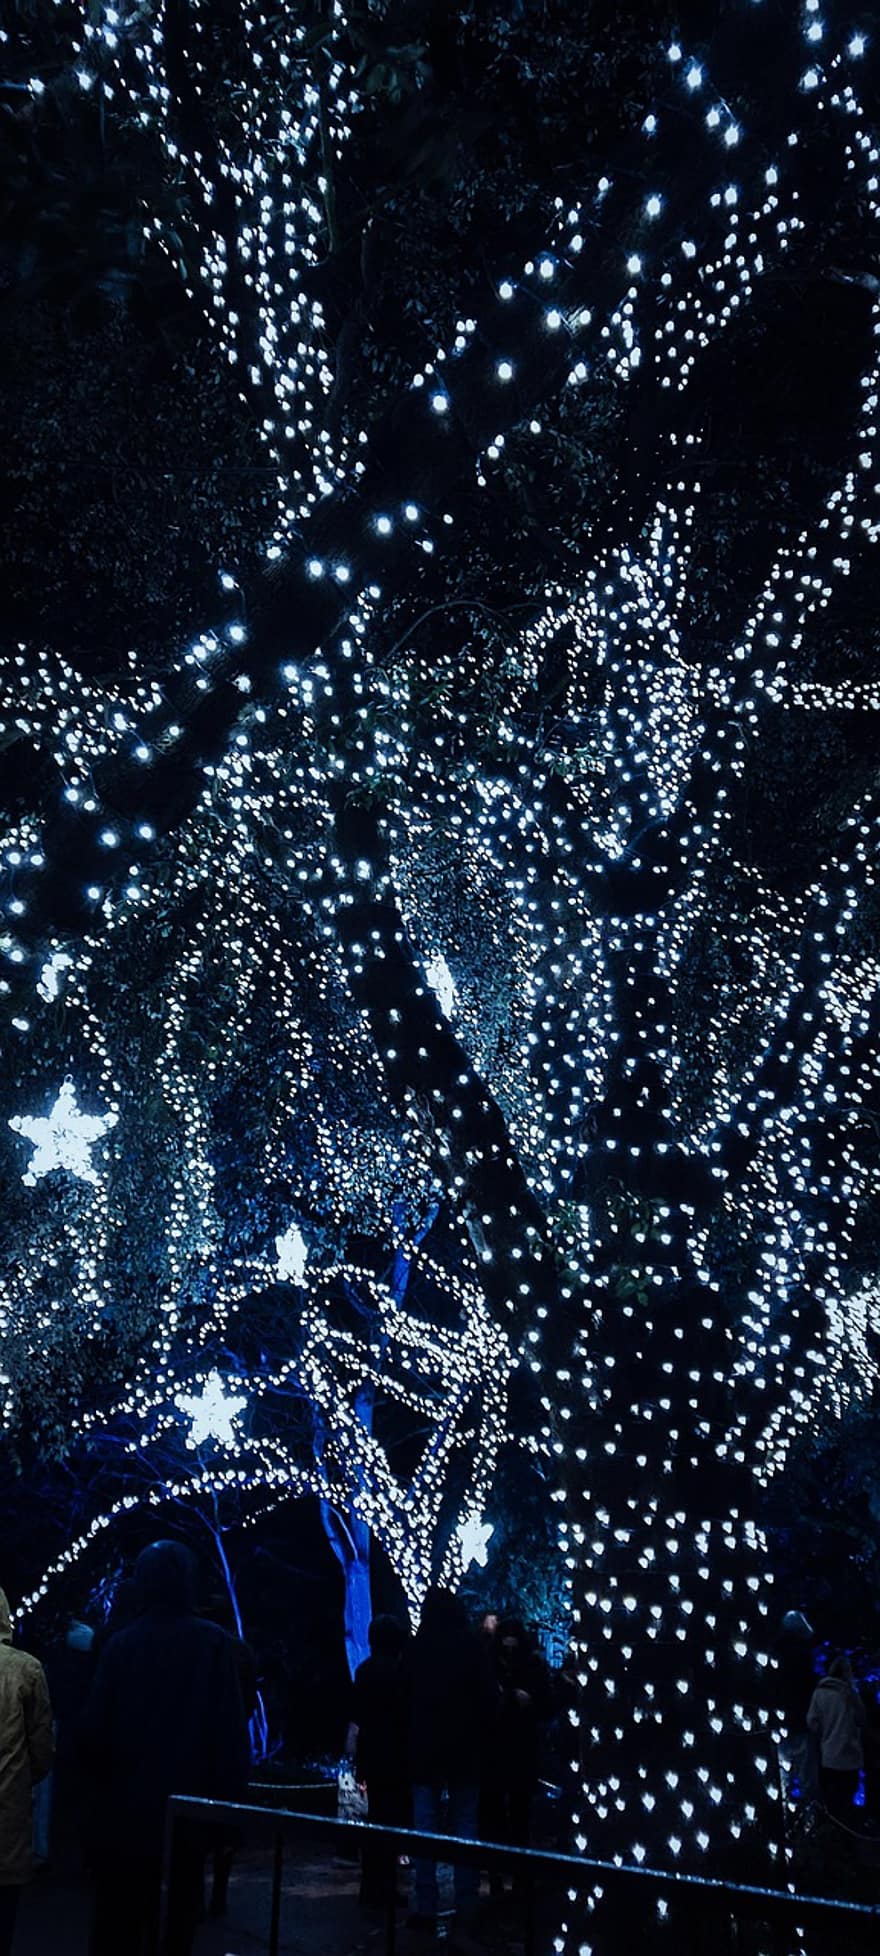 δέντρο, τα φώτα νεράιδα, φωτεινός, Χριστουγεννιάτικα λαμπάκια, αστέρια, Χριστούγεννα αστέρια, λάμψη, λαμπερός, λαμπερά φώτα, Χριστουγεννιάτικα στολίδια, Νύχτα